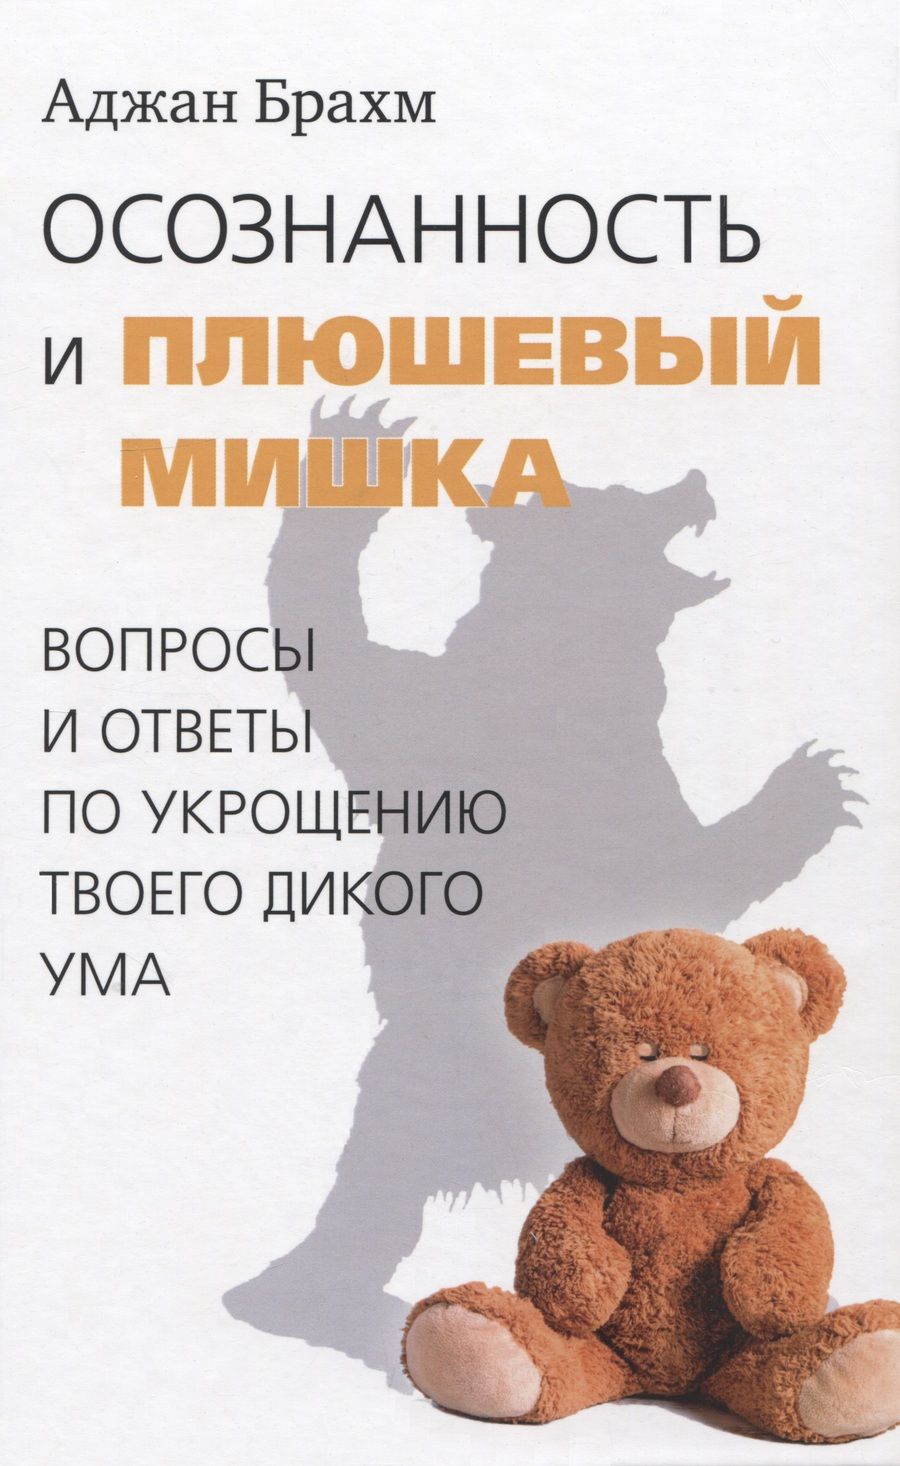 Обложка книги "Брахм: Осознанность и плюшевый мишка. Вопросы и ответы по укрощению твоего дикого ума"